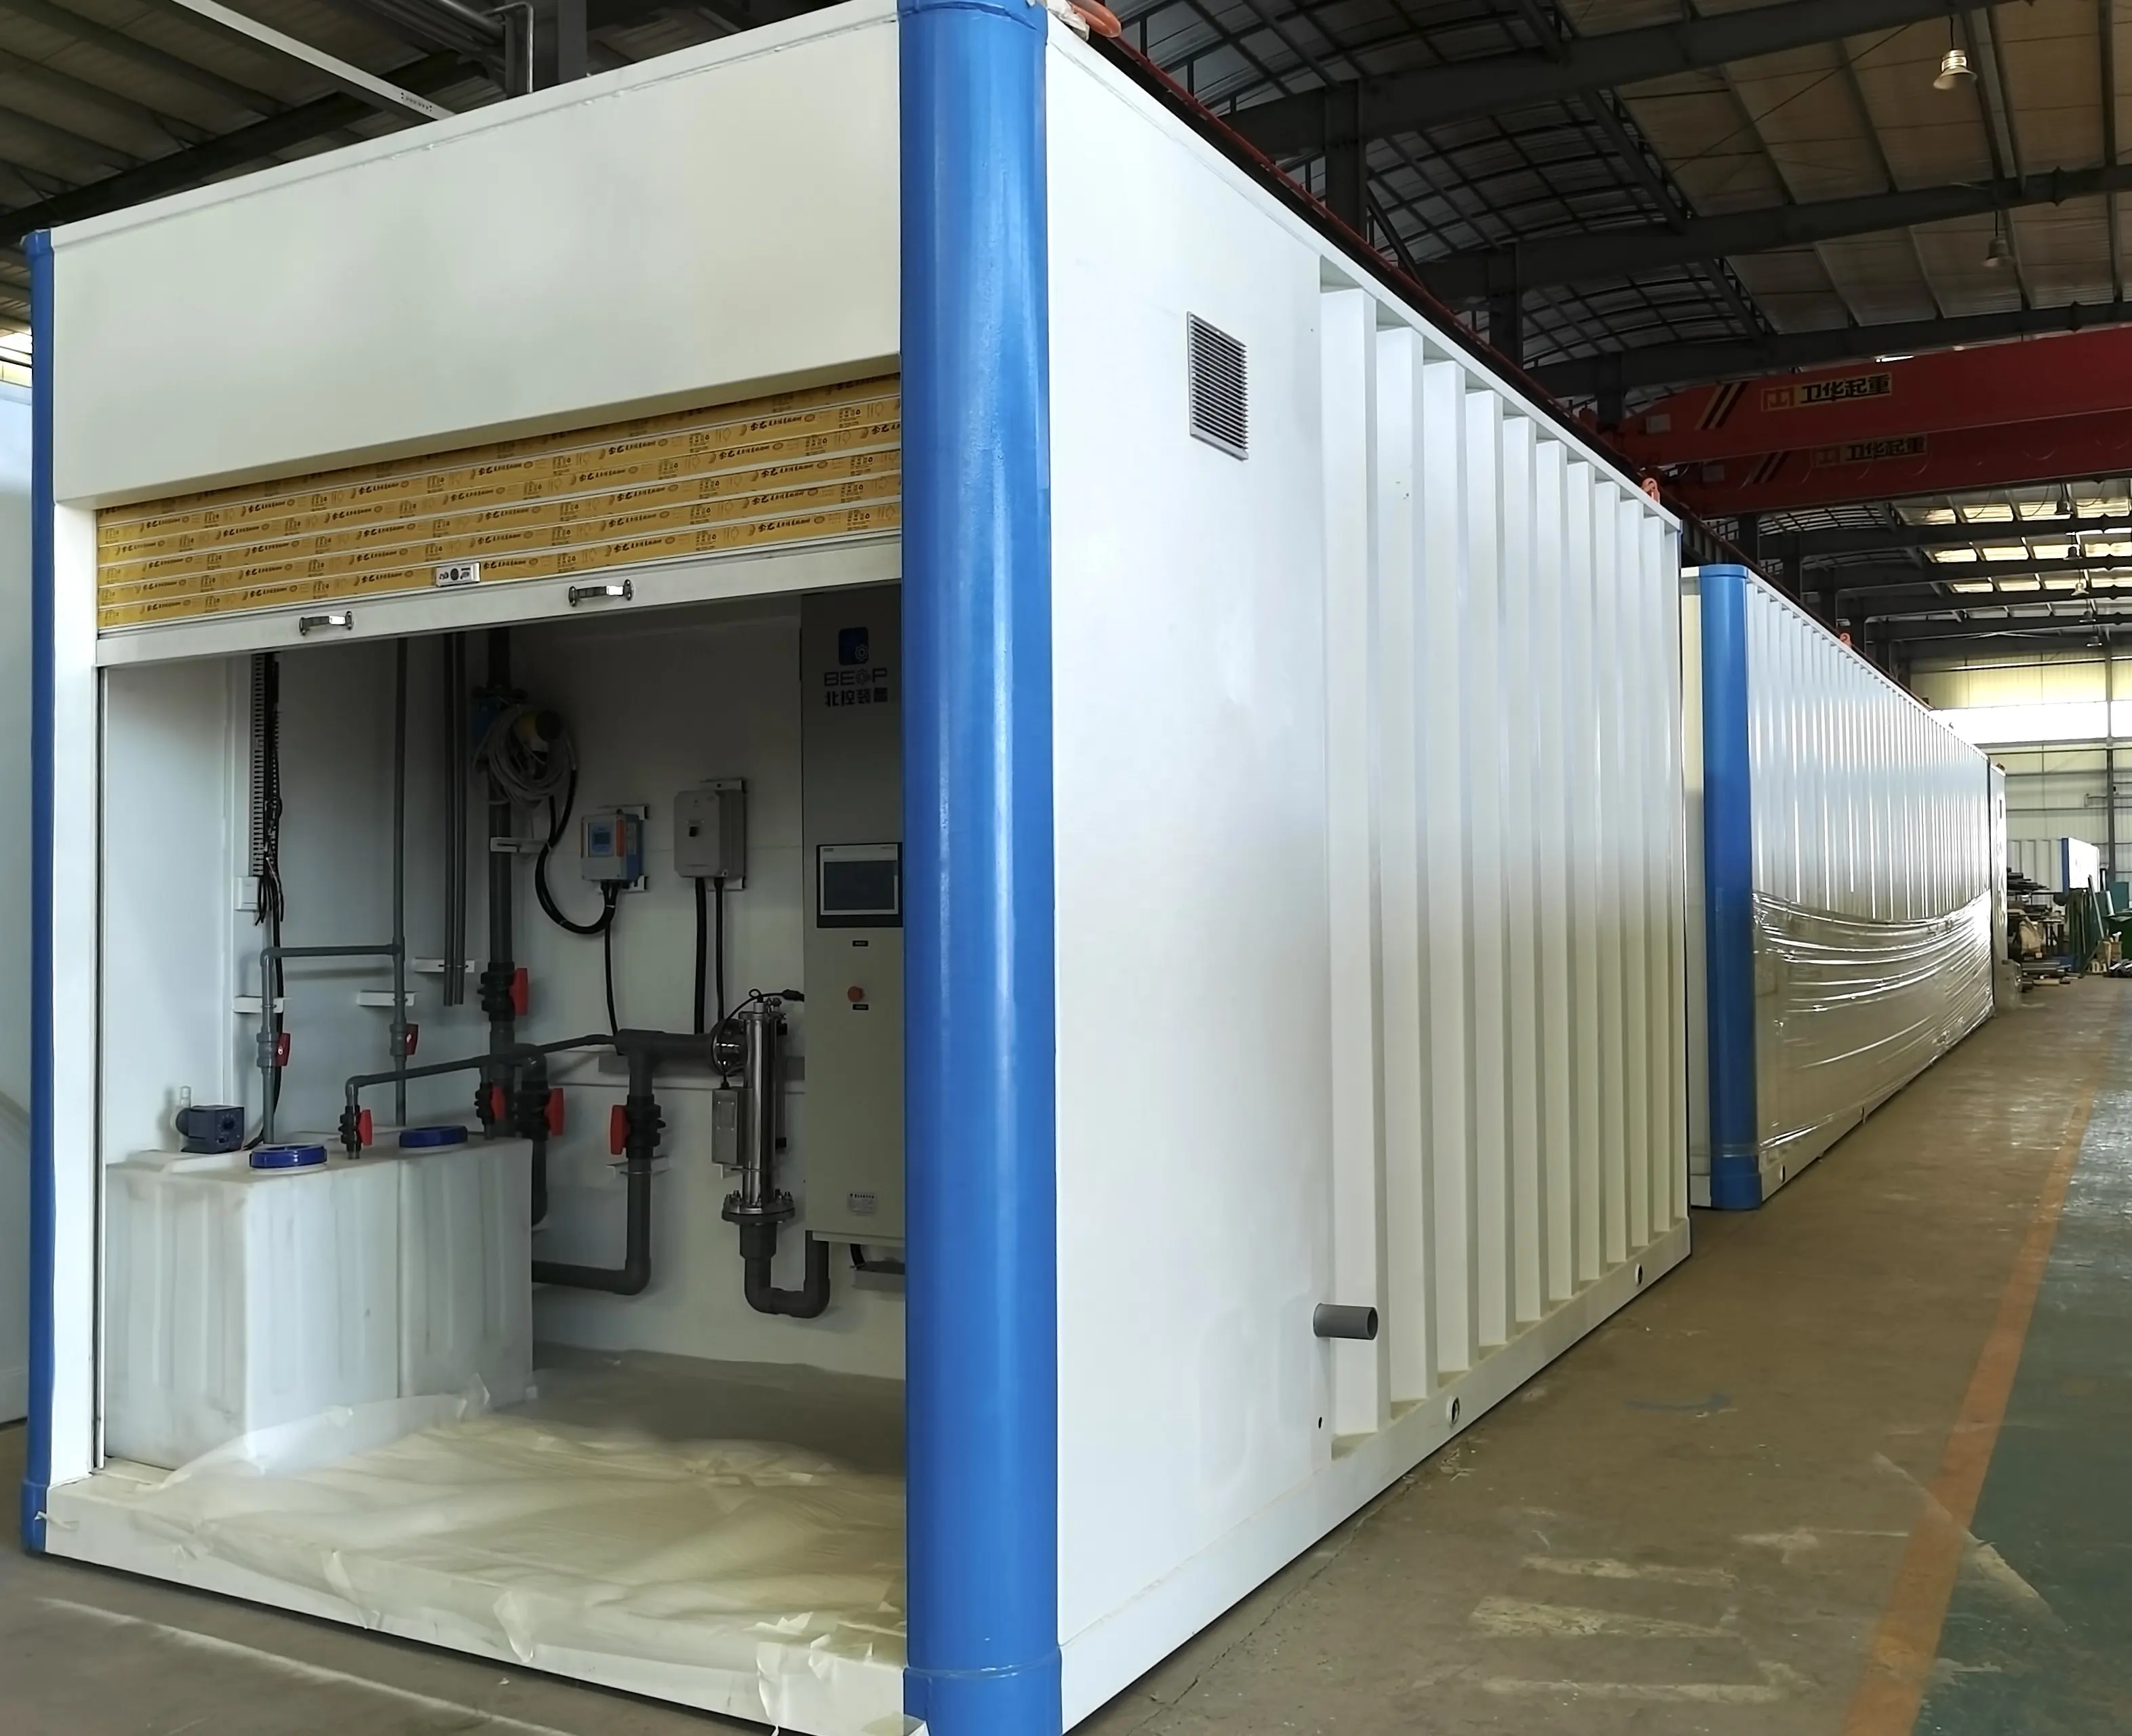 Gói Nhà máy/gói nước thải nhà máy xử lý nước thải hệ thống mbbr nhà máy xử lý nước thải công nghiệp